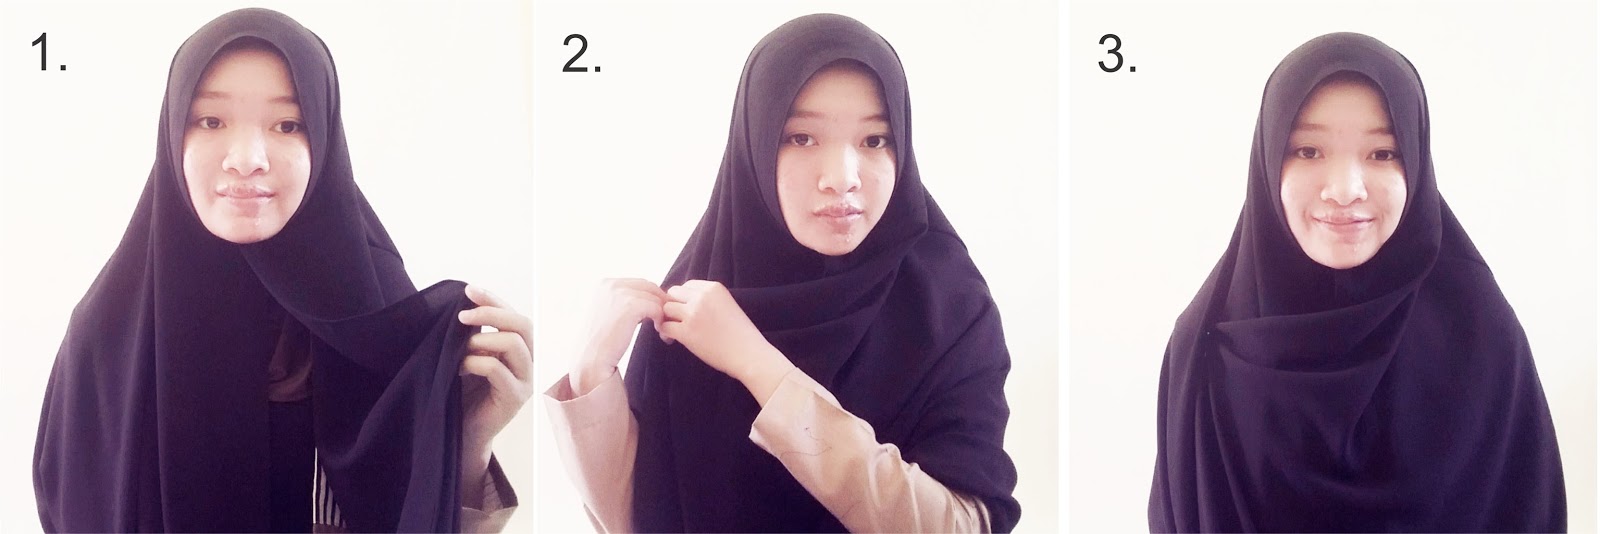 27 Gambarnya Tutorial Hijab Muslimah Untuk Kalian Tutorial Hijab